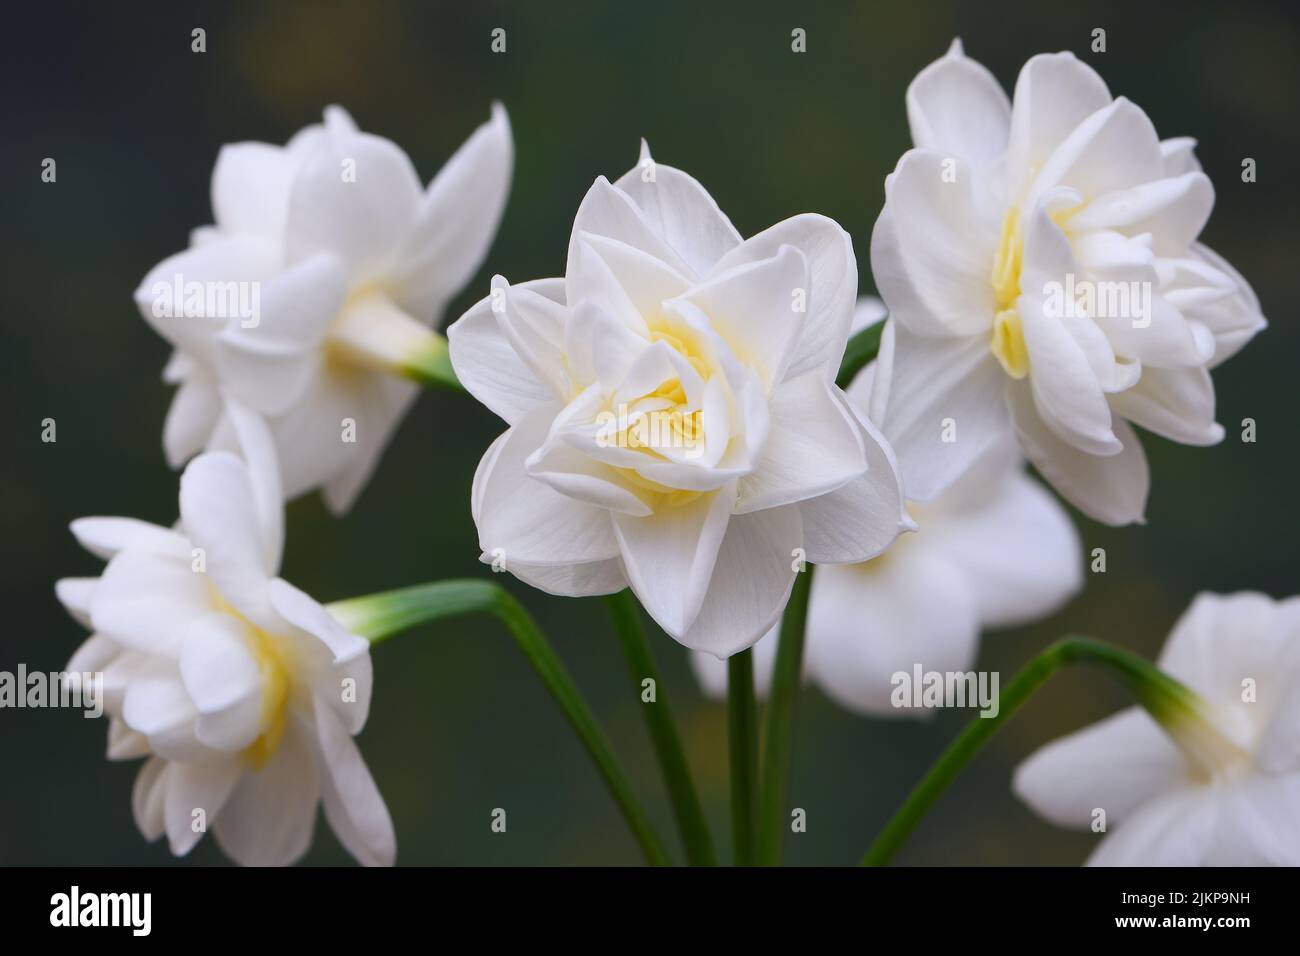 Un primo piano di Jonquil Erlicheer bianco -Jonquil narcissus ibrido- fiori in morbido, verde scuro illuminazione d'atmosfera; catturato in uno Studio Foto Stock